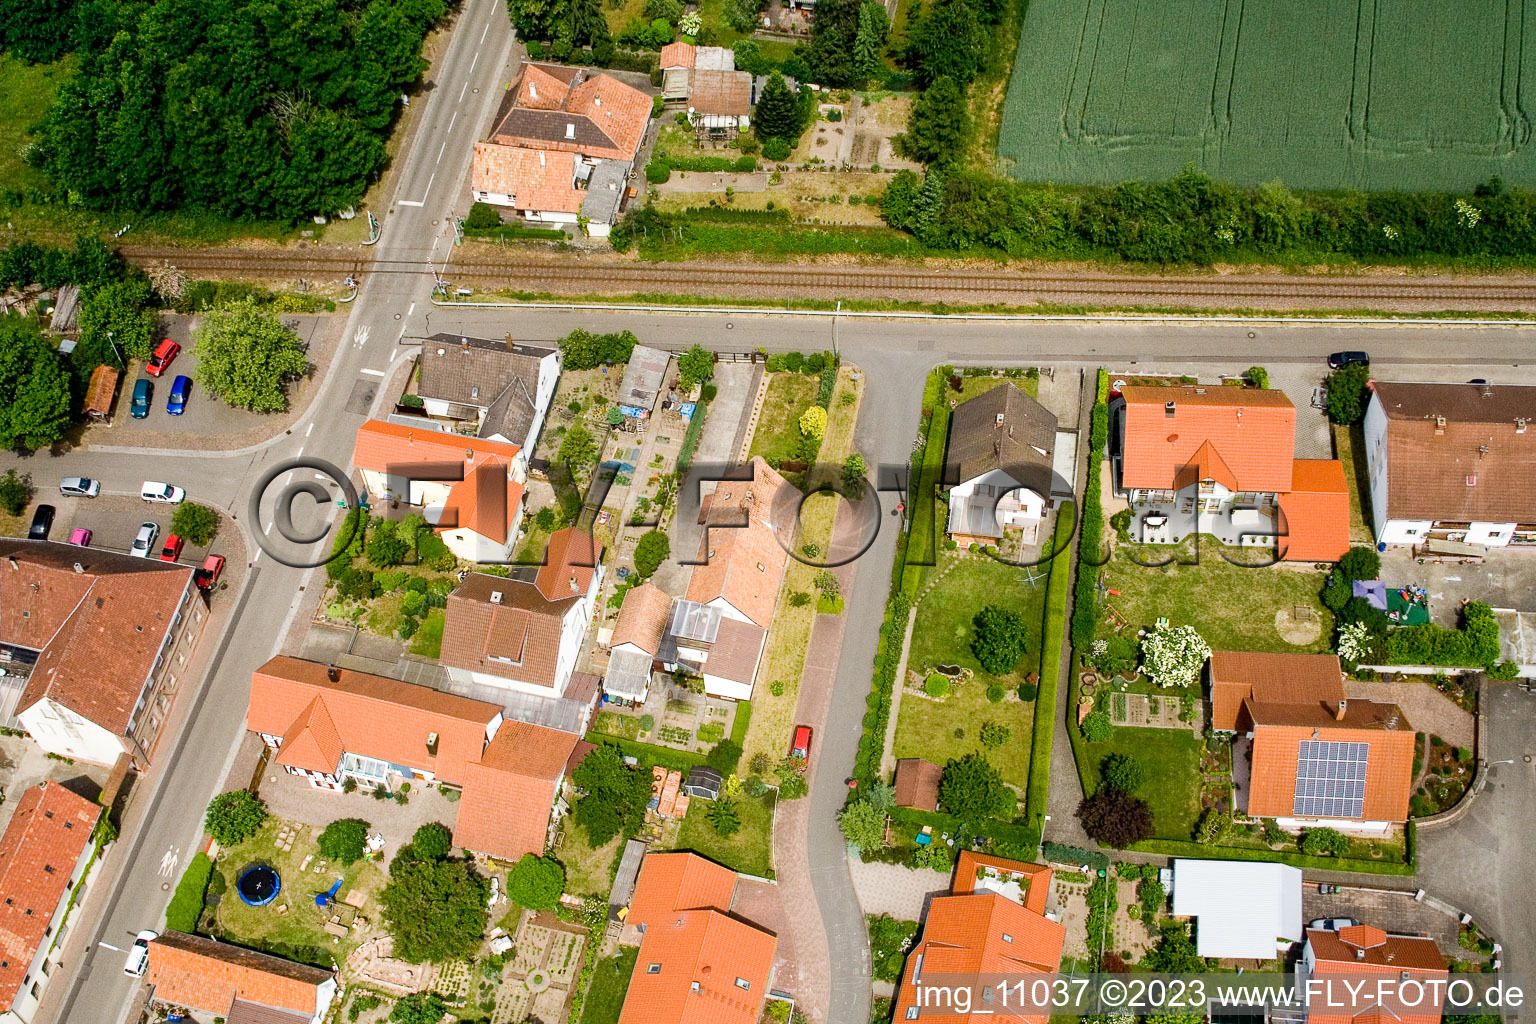 Barbelroth im Bundesland Rheinland-Pfalz, Deutschland aus der Luft betrachtet